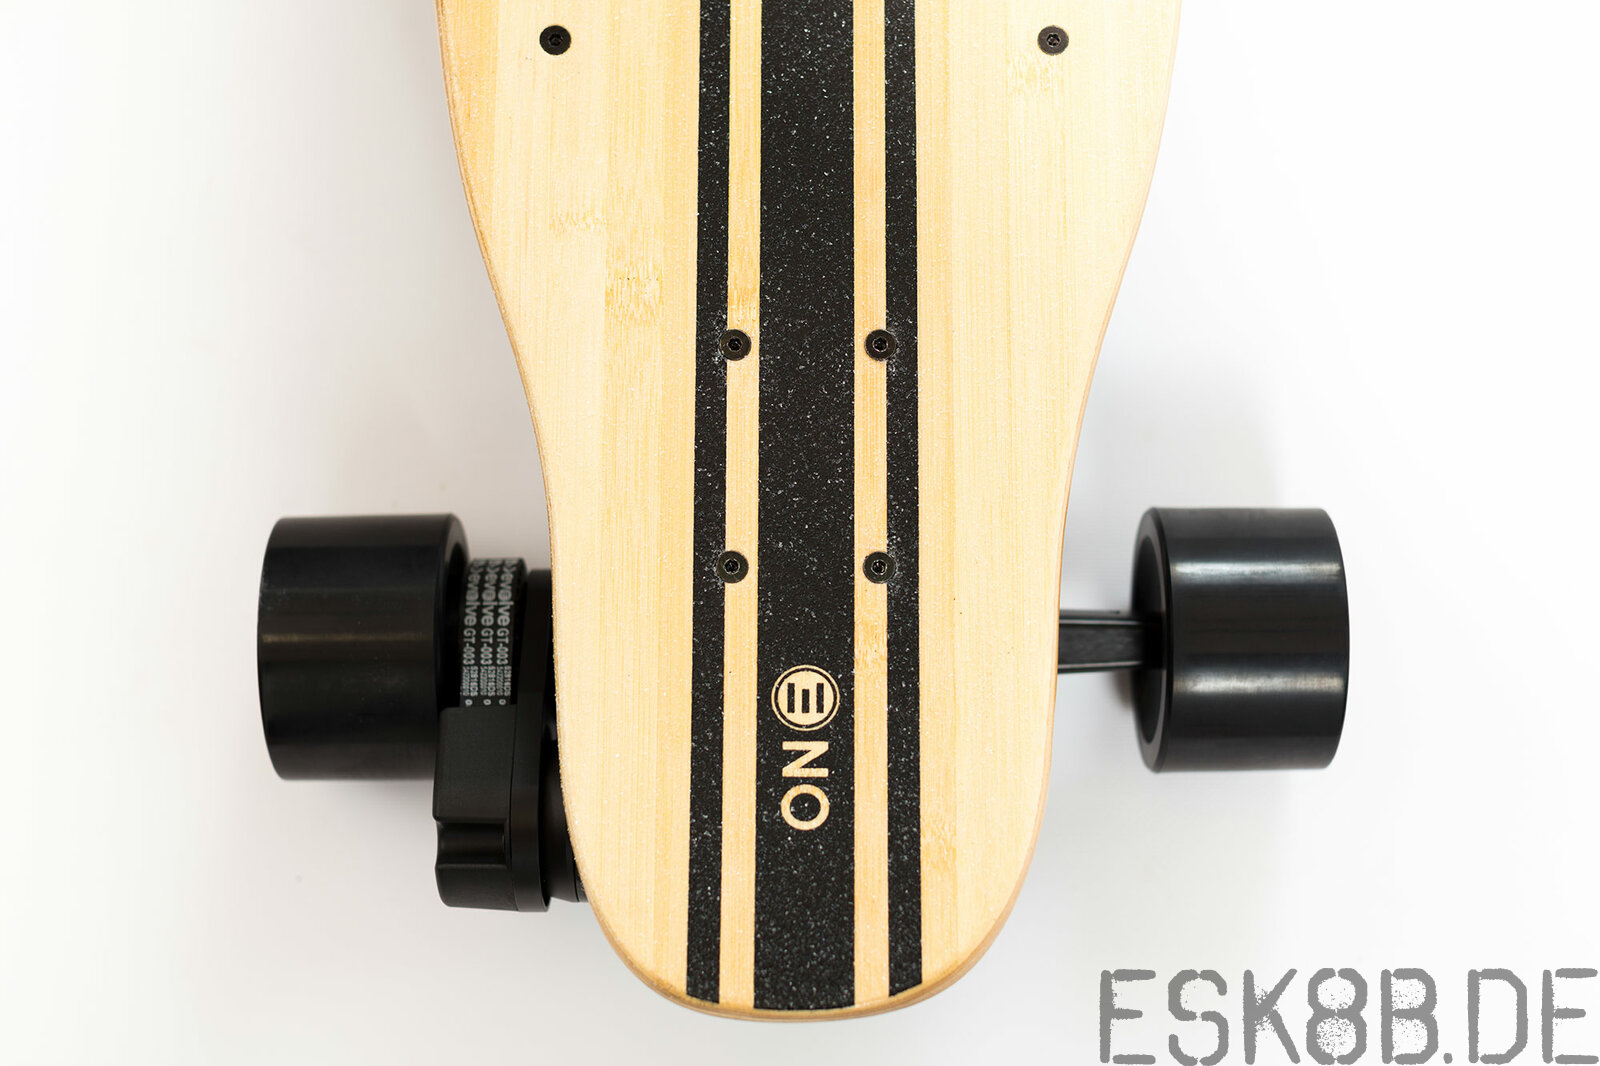 Evolve ONE Elektroskateboard
http://www.evolveskateboards.de/